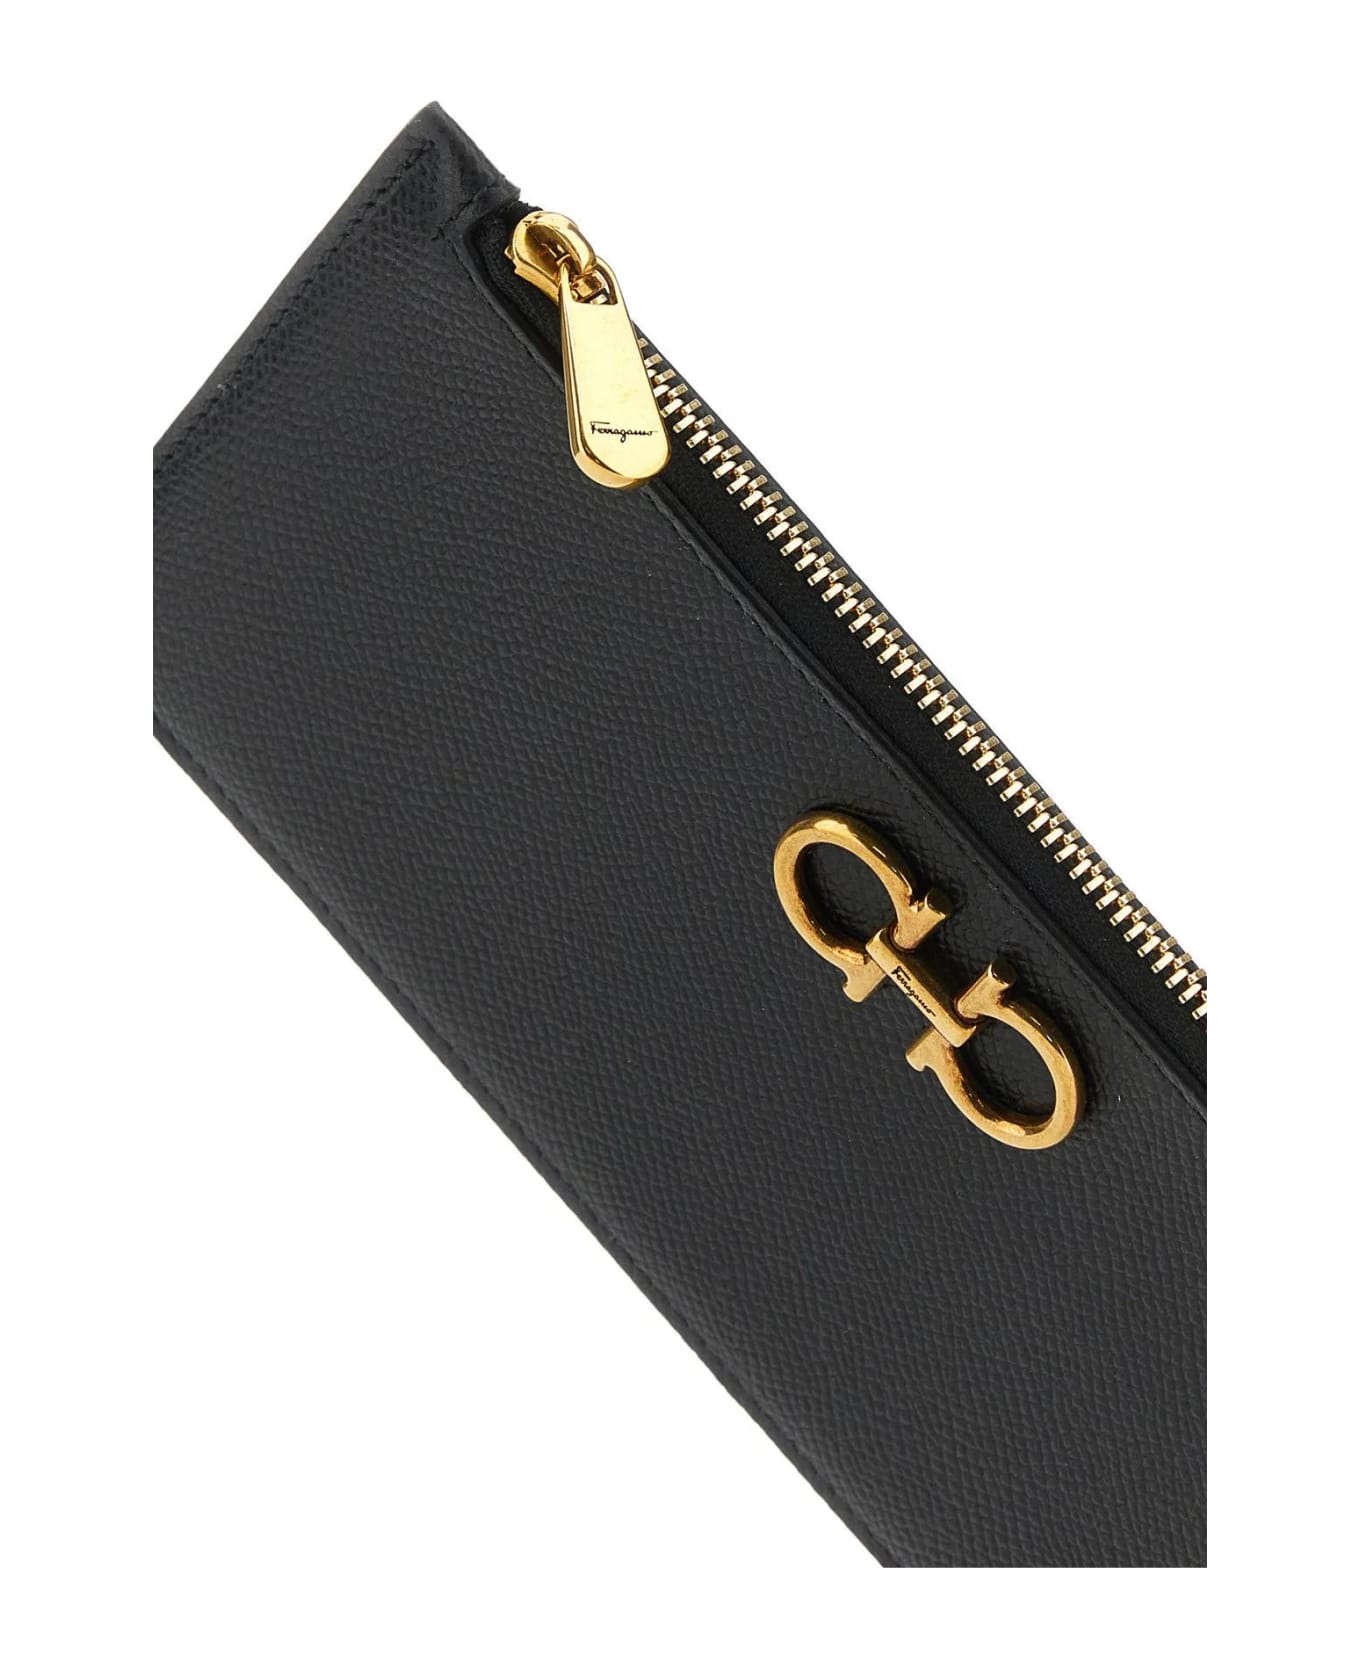 Ferragamo Black Leather Card Holder - Nero